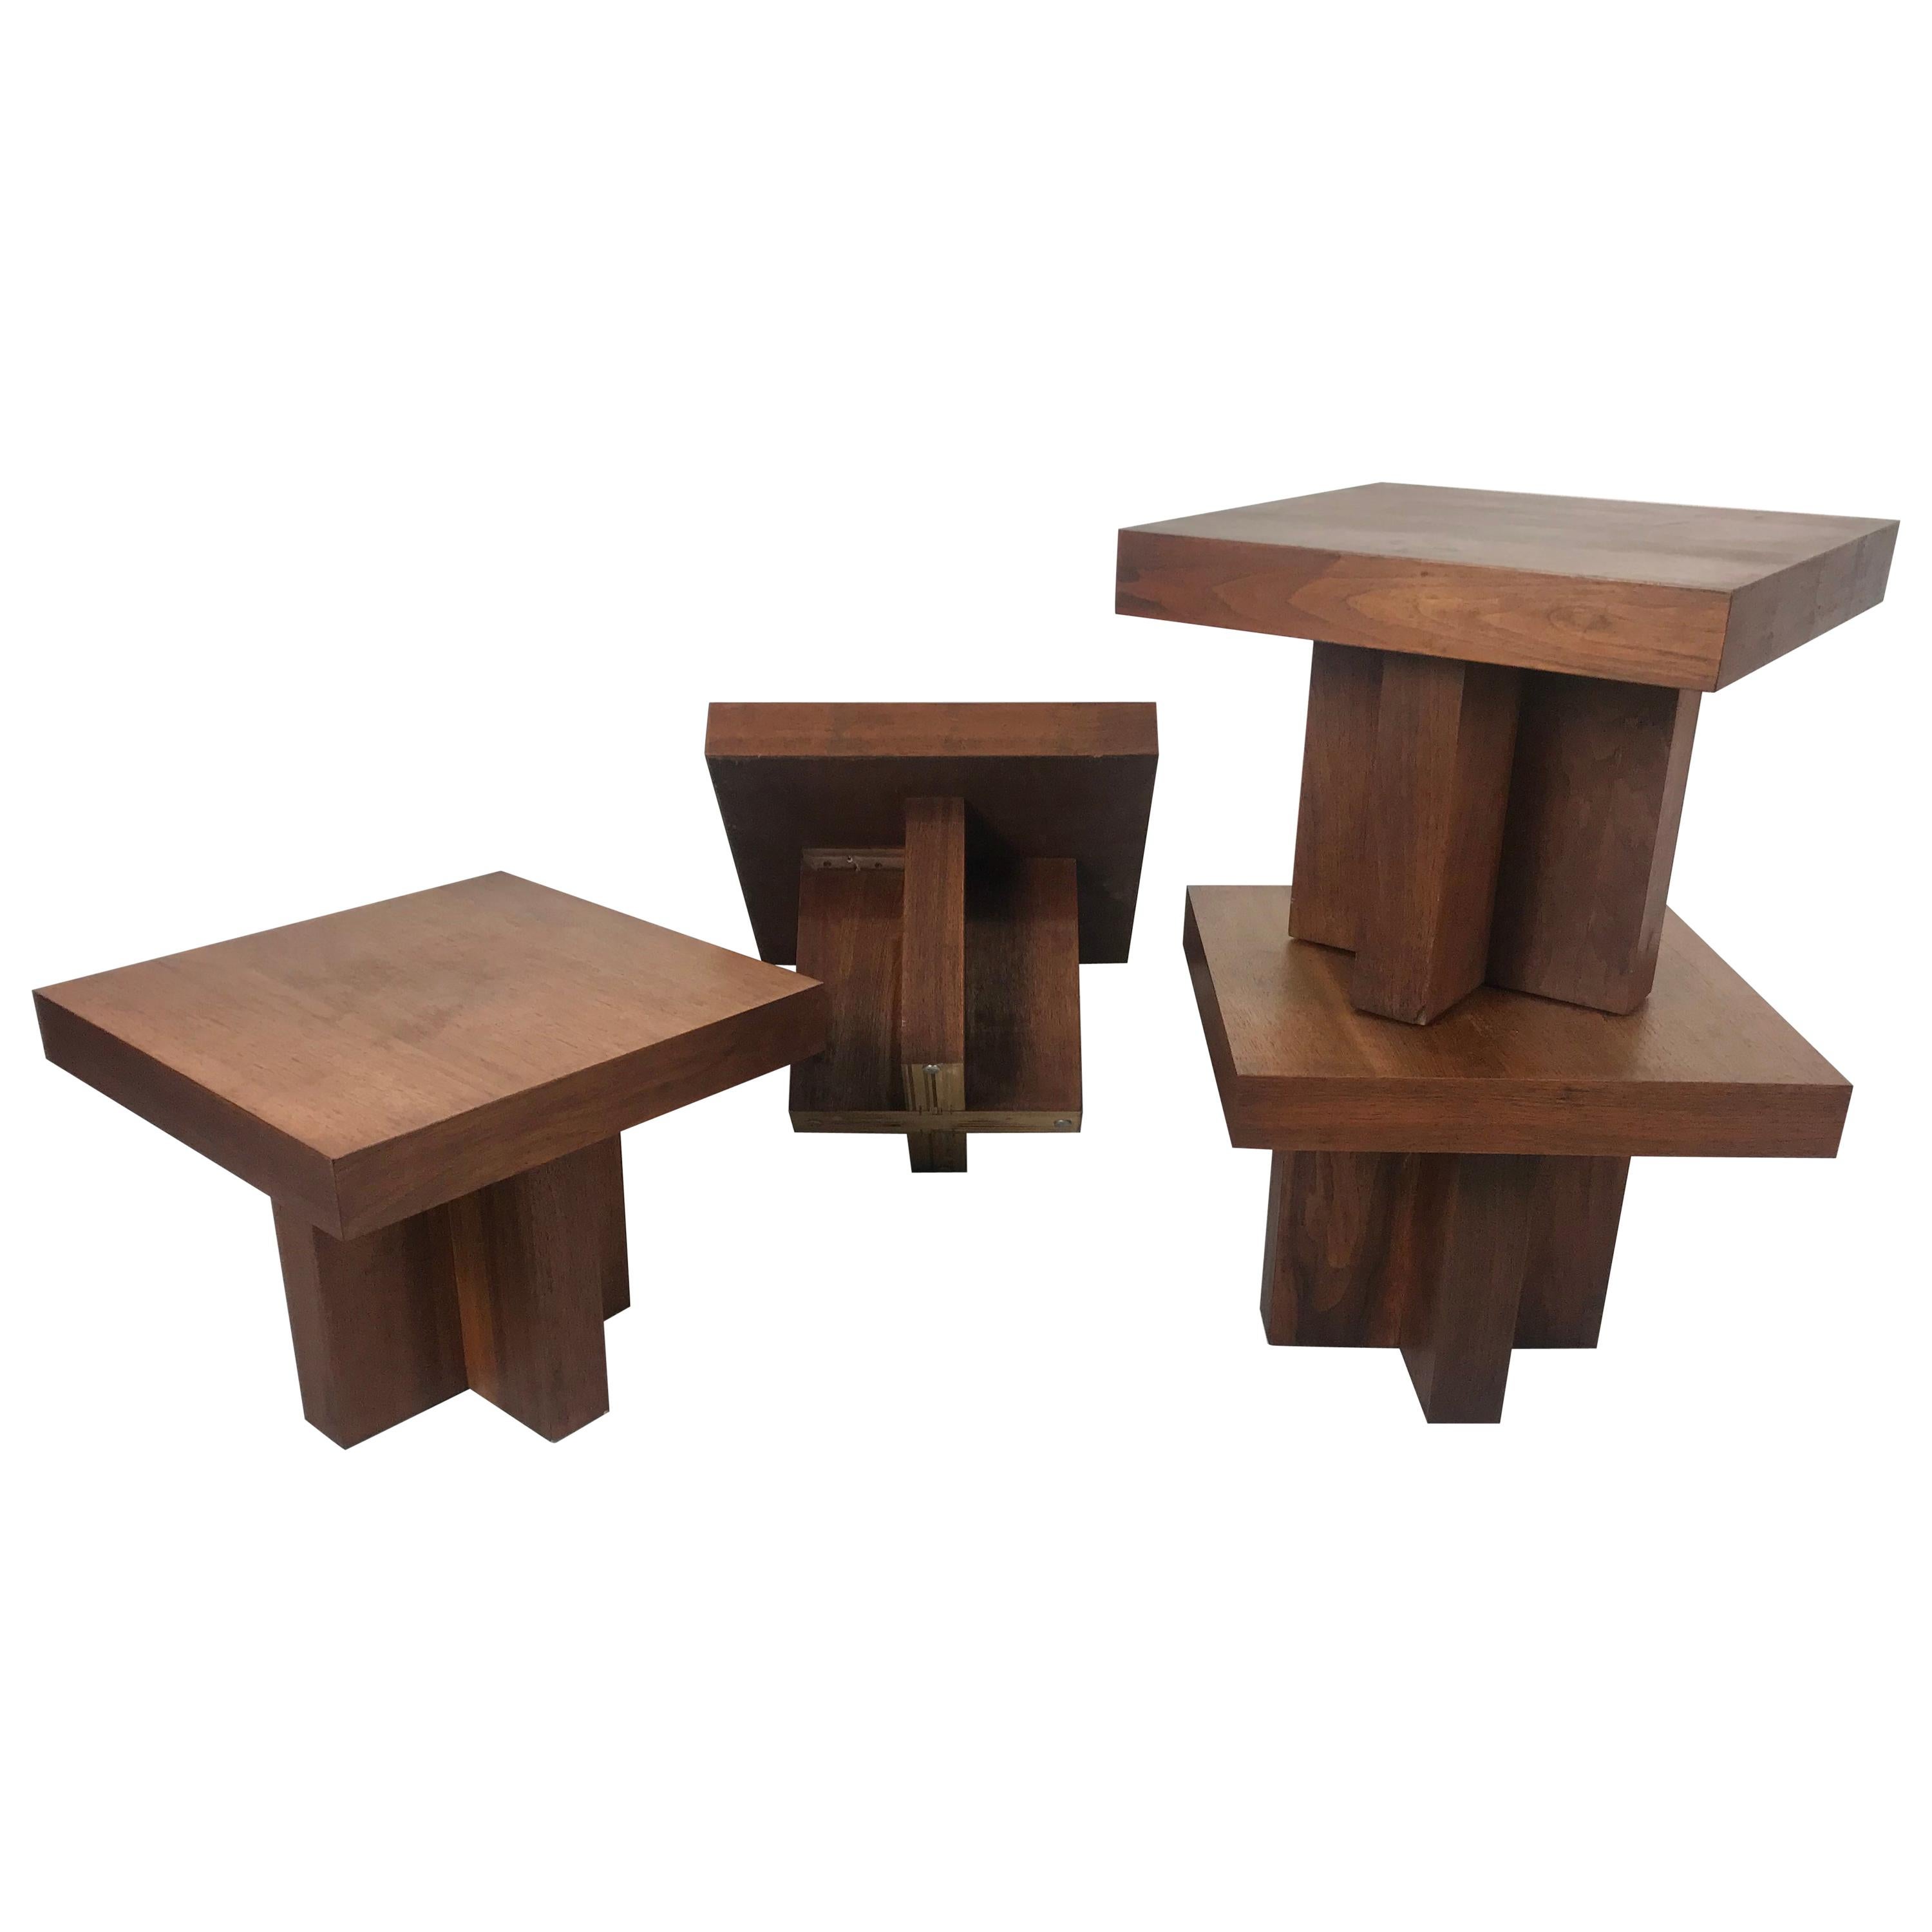 Milo Baughman Style 'Cruciform' End Tables, Architectural Modernist Design